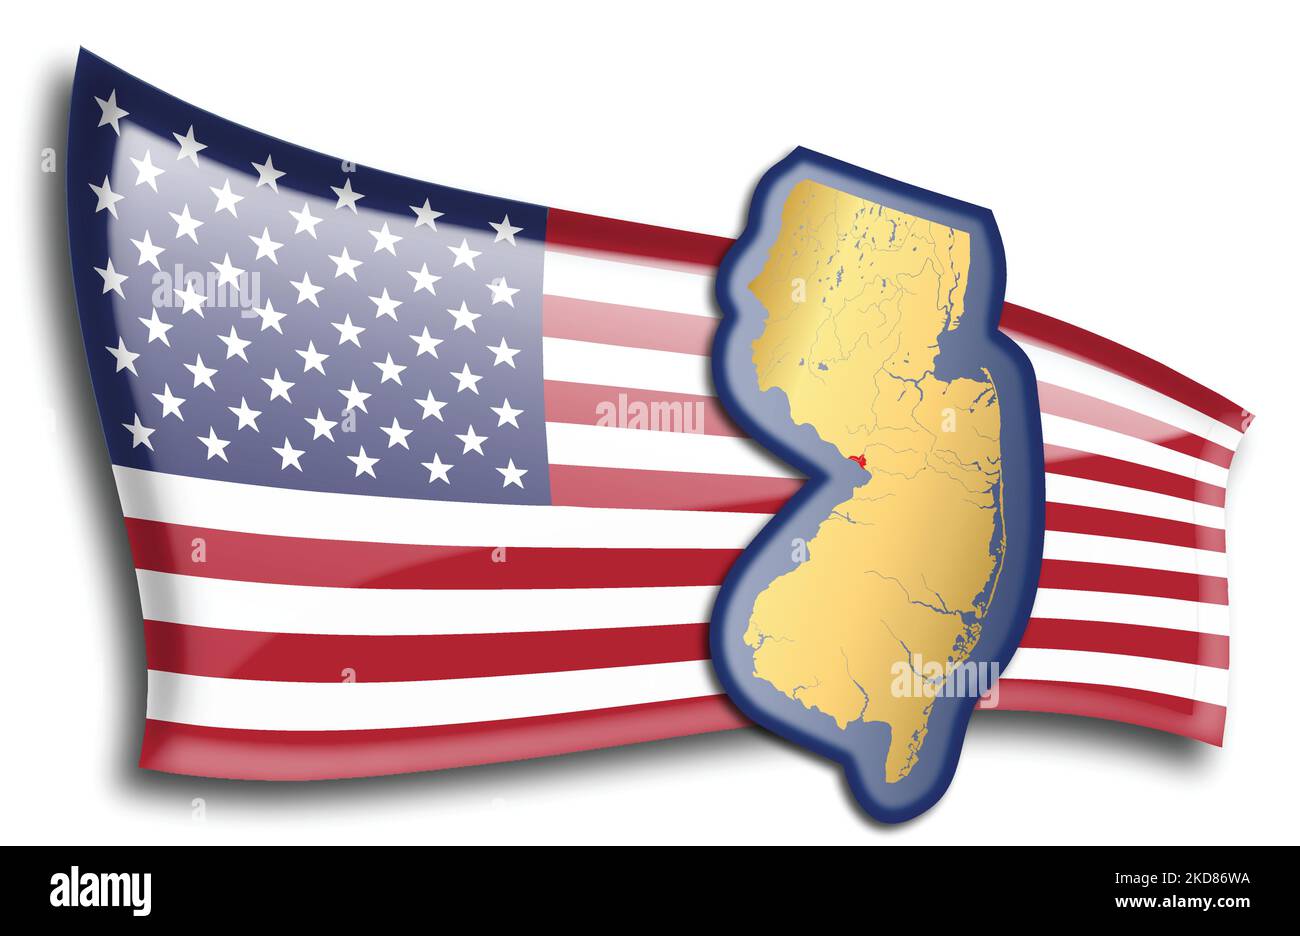 Etats-Unis - carte du New Jersey contre un drapeau américain. Les rivières et les lacs sont affichés sur la carte. American Flag et State Map peuvent être utilisés séparément Illustration de Vecteur